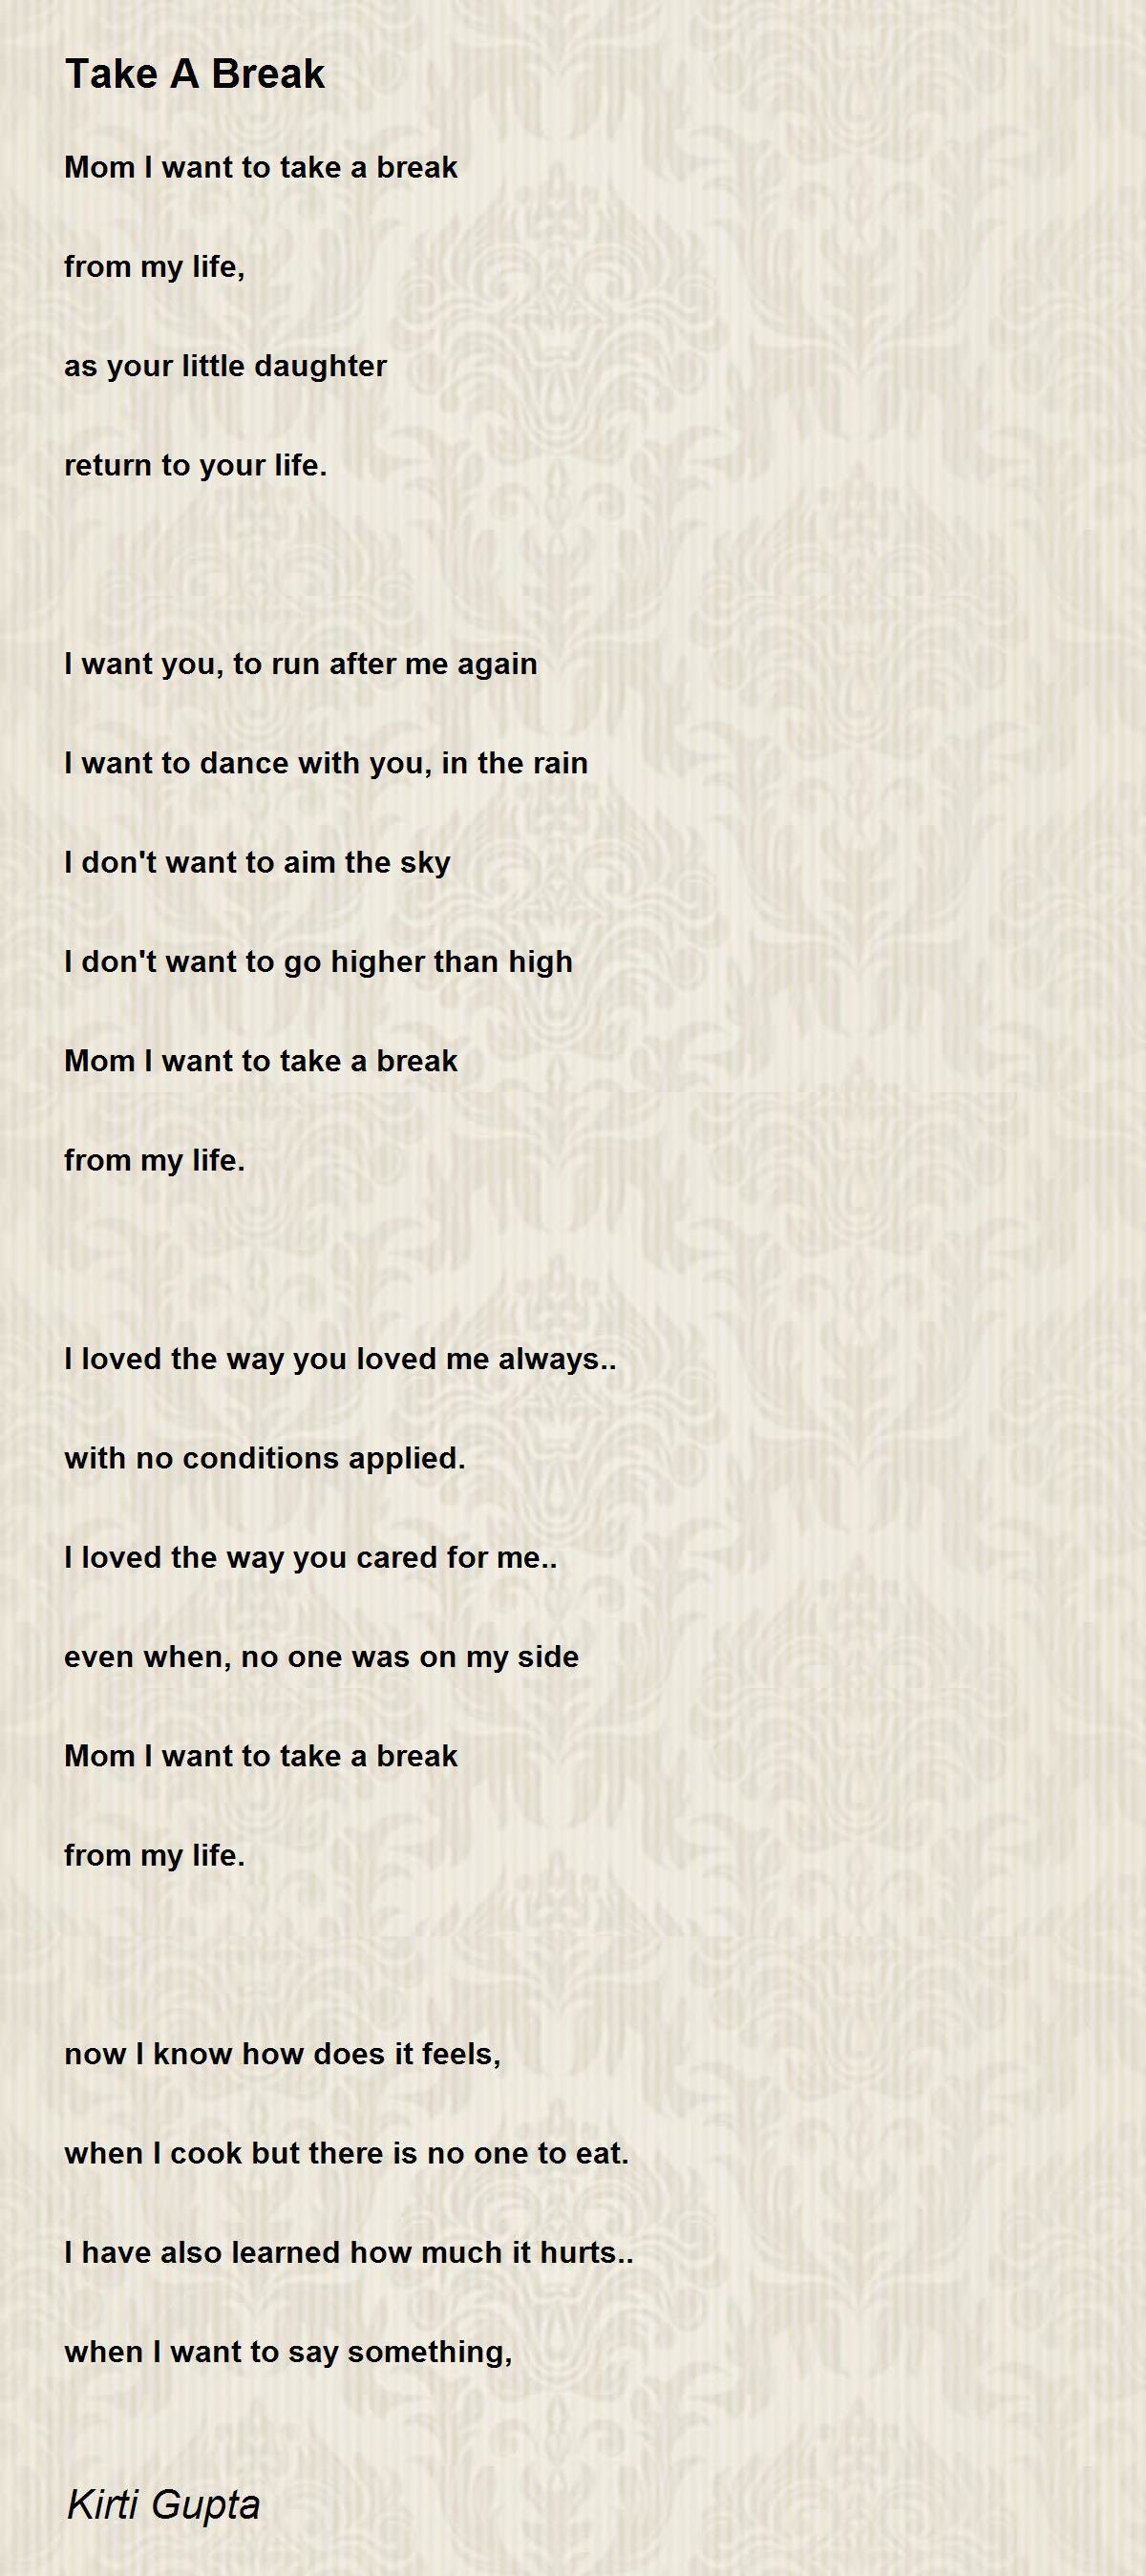 Take A Break - Take A Break Poem by Kirti Gupta